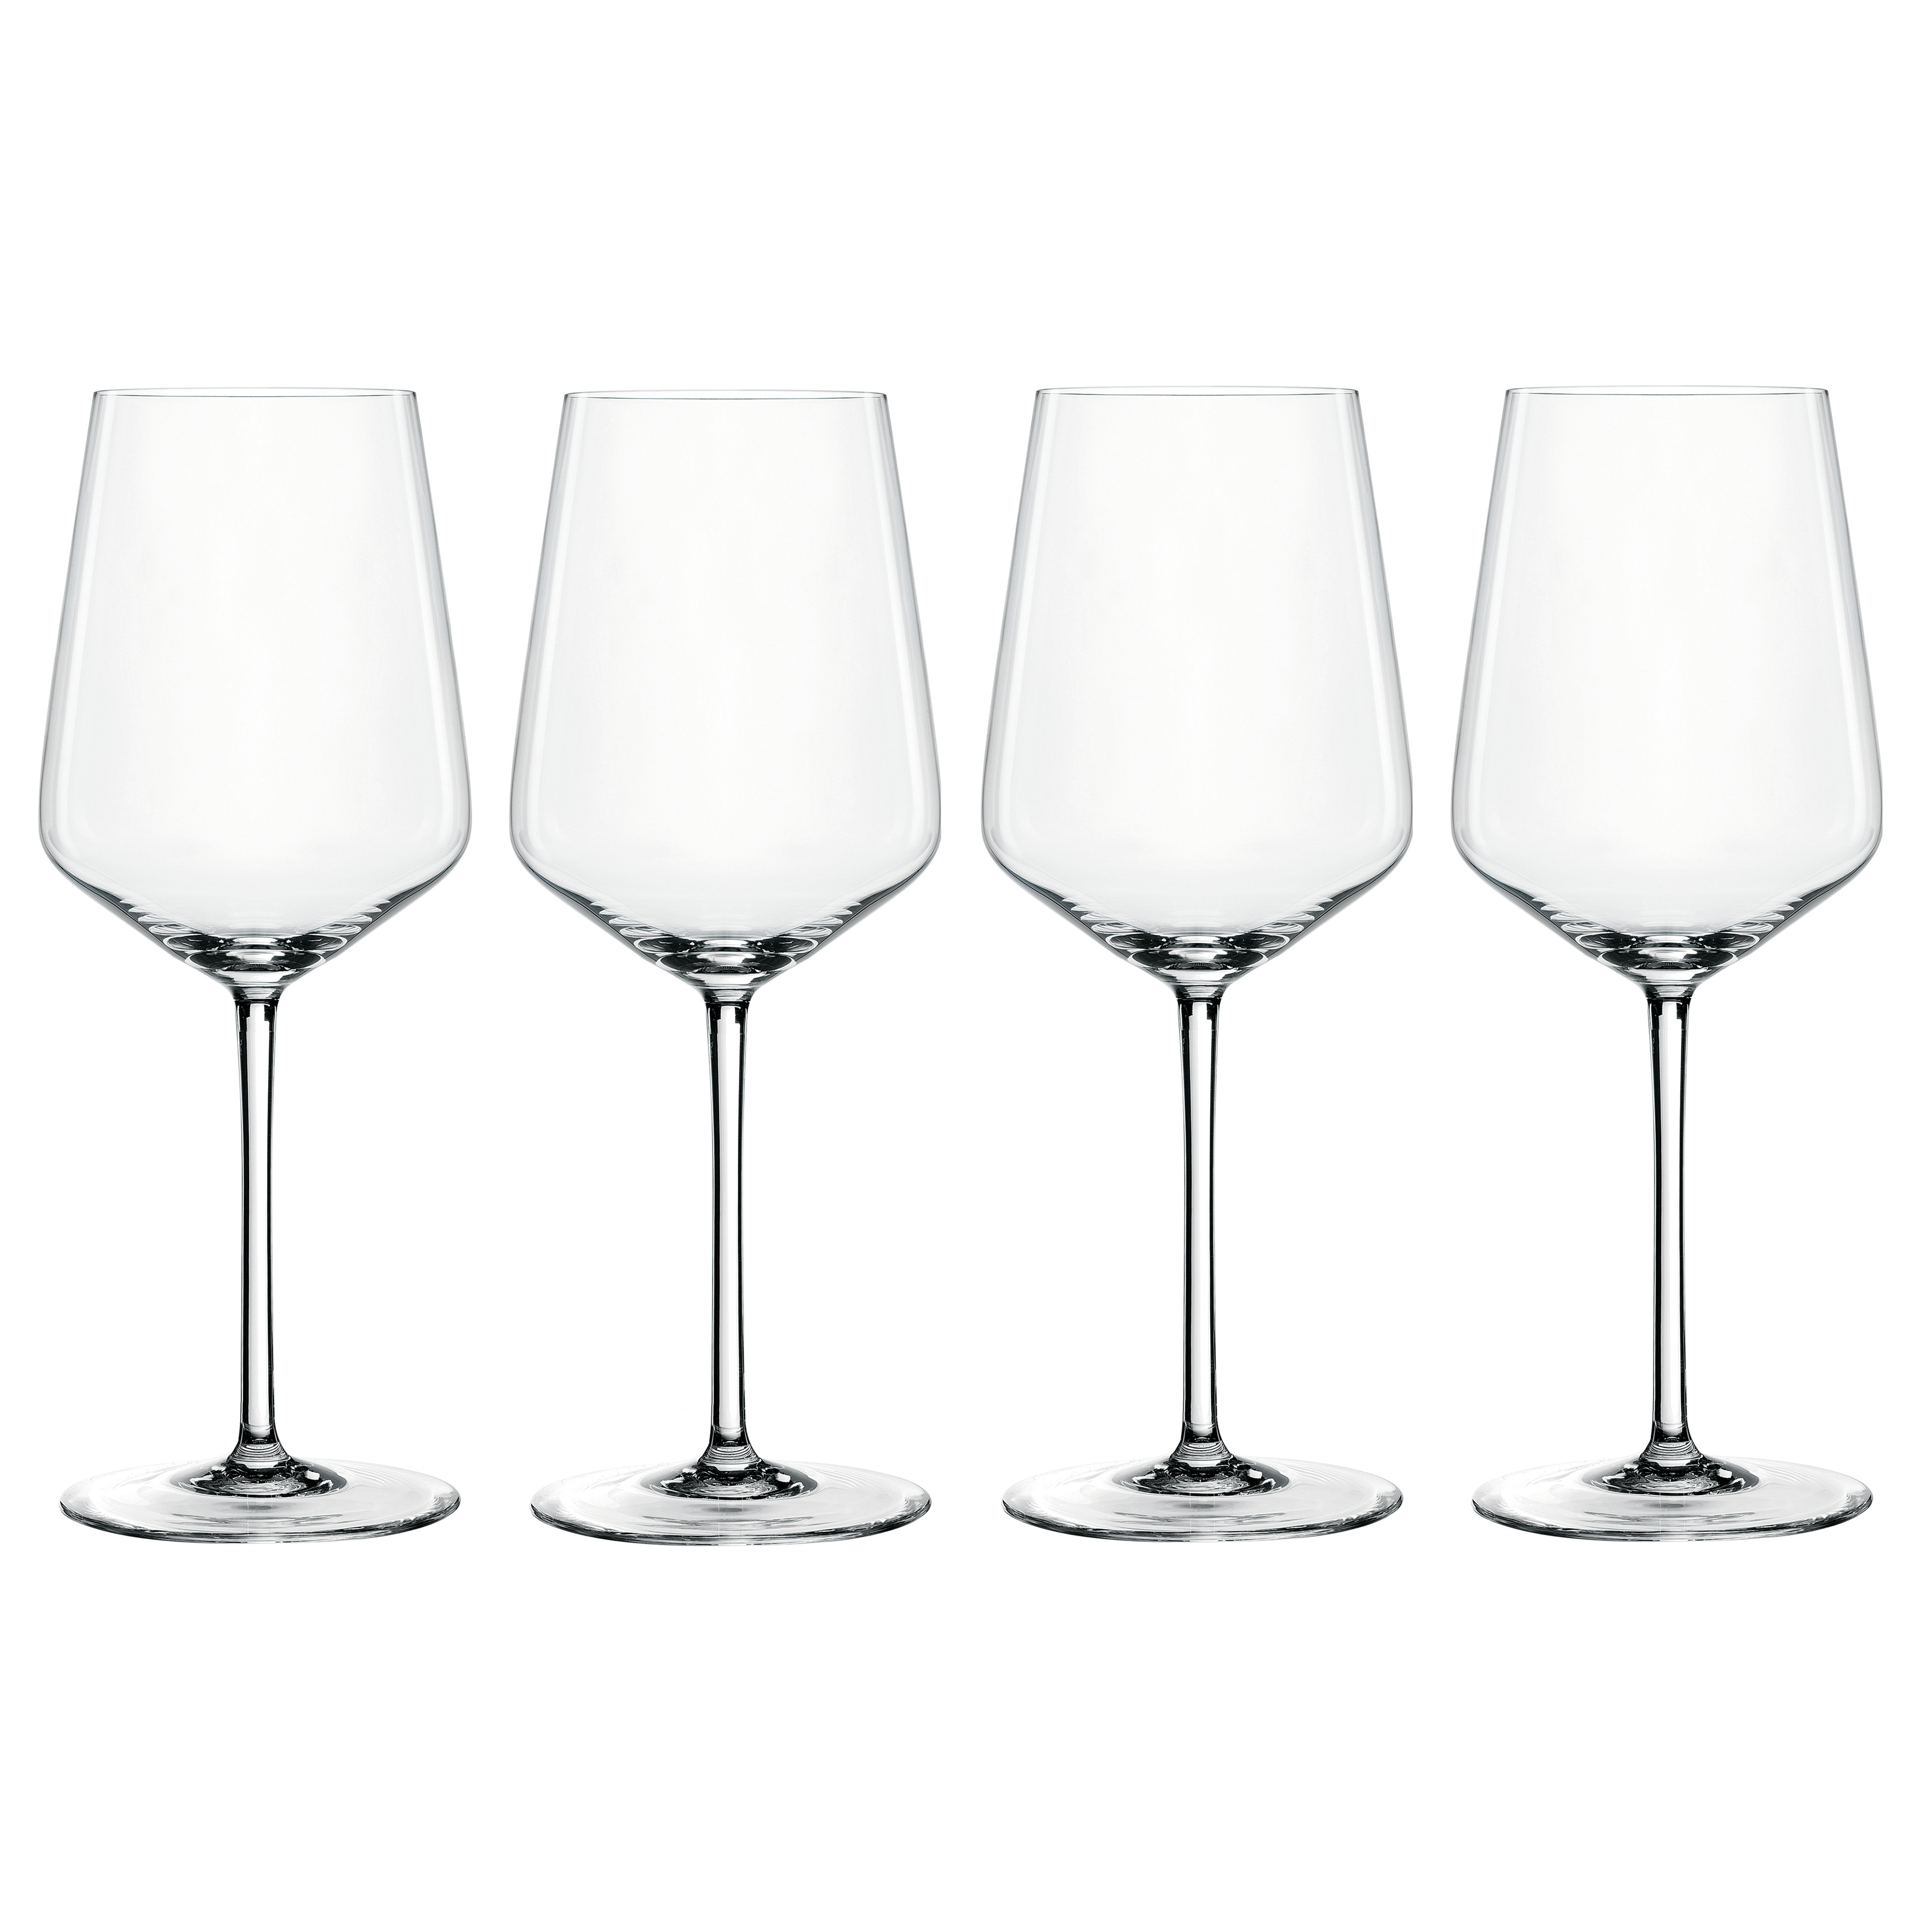 まとめ得] シュピゲラウ サルーテ グラス ホワイトワイン 12個セット 5402 x 2個セット